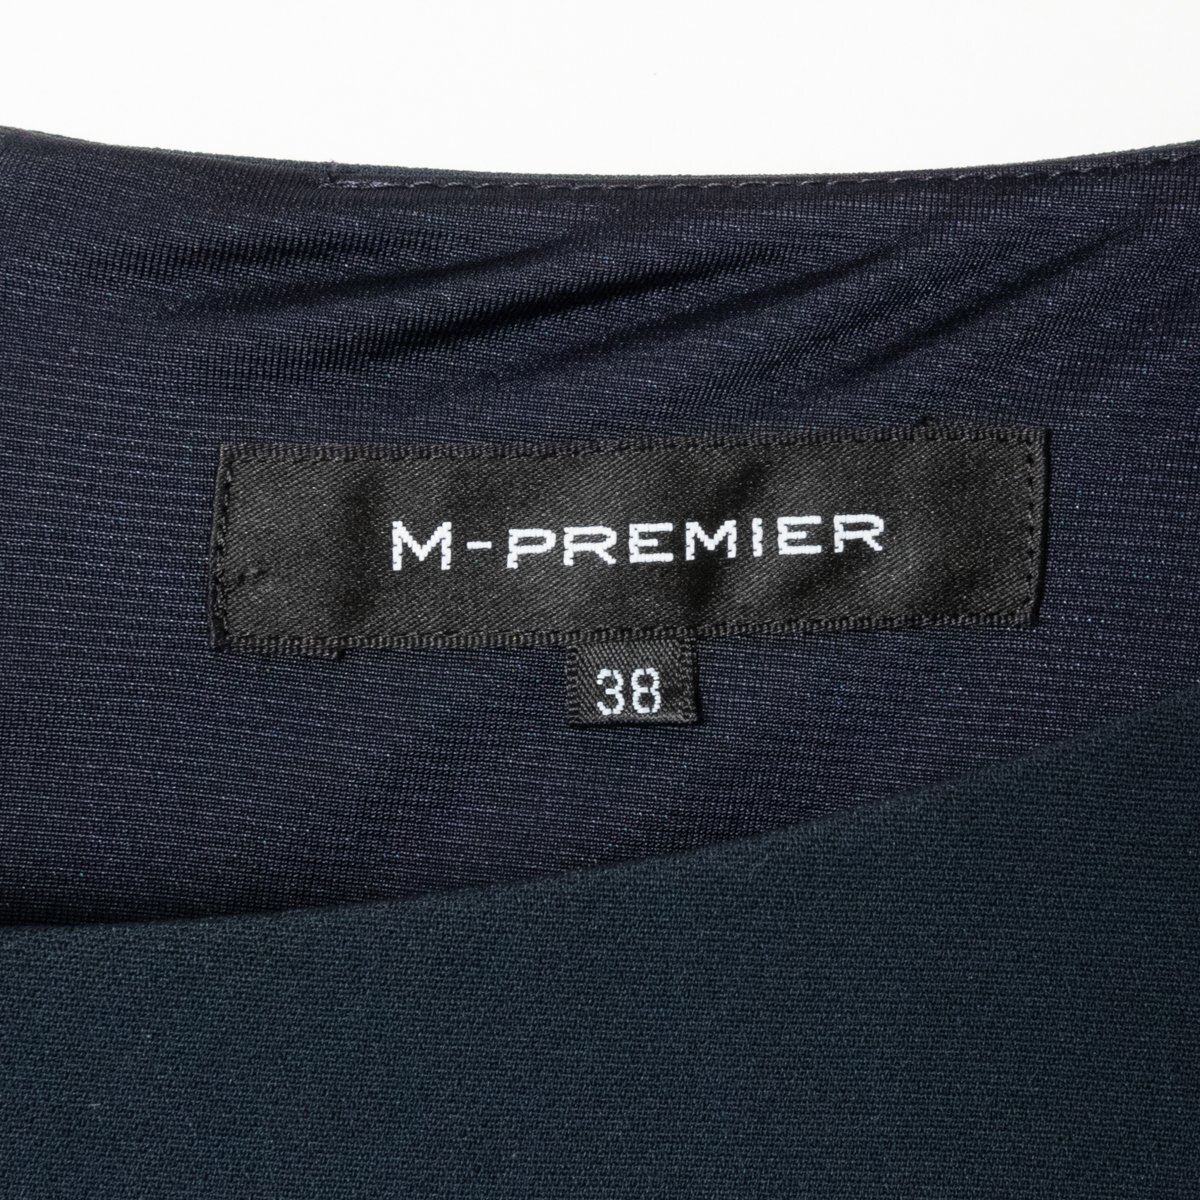 M-PREMIER безрукавка do King One-piece M тянуть mie темный темно-синий простой Basic красивый . casual подкладка есть 38 сделано в Японии 